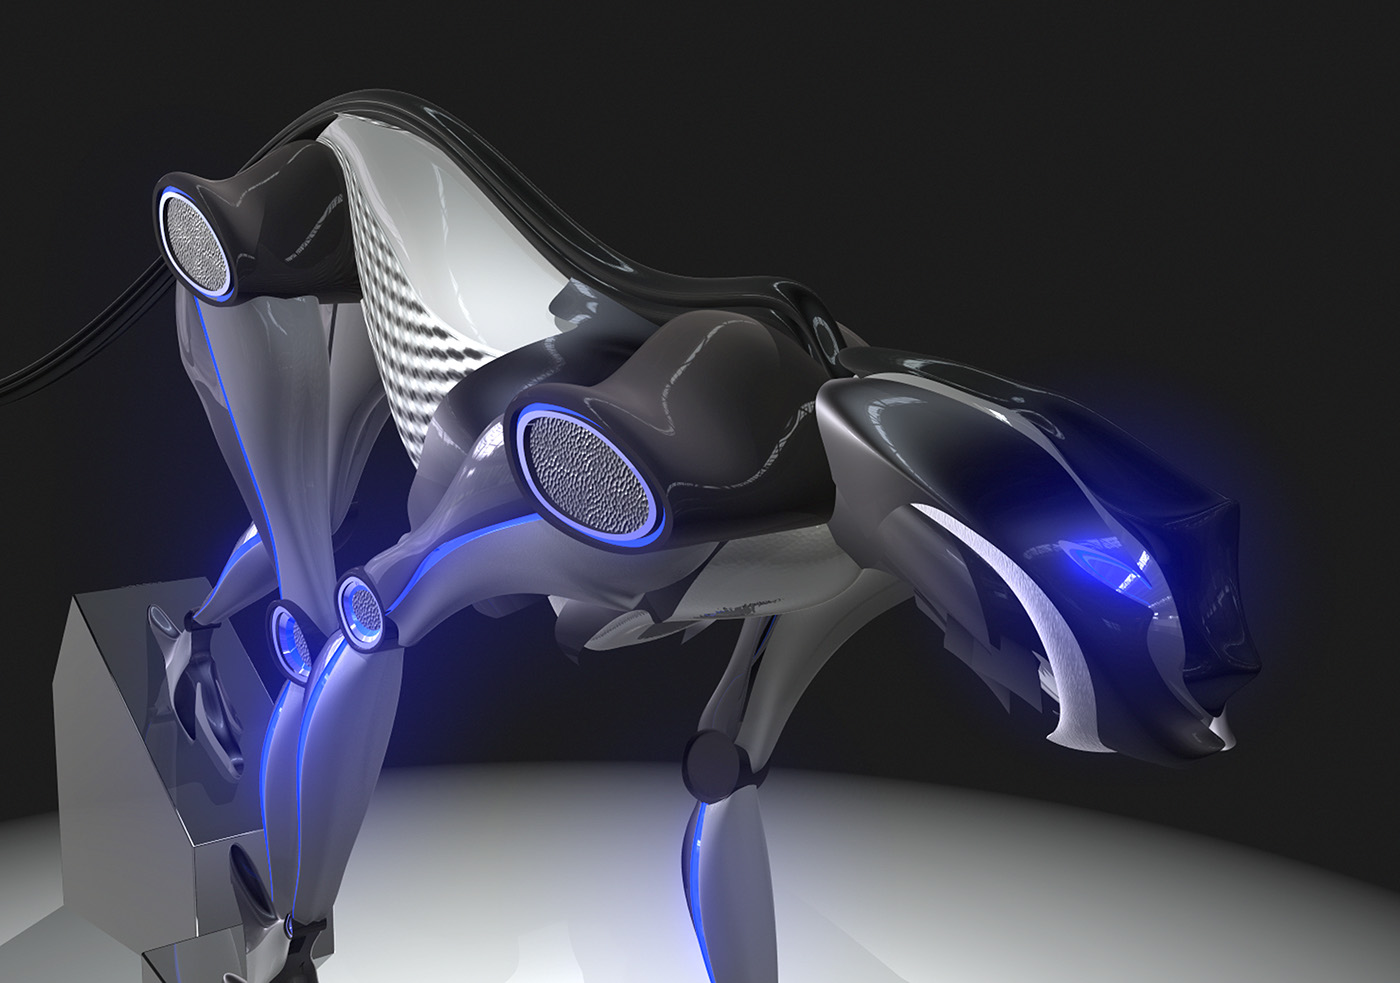 robot drone leopard 3d modeling alias automotive Render michael frassine design concept